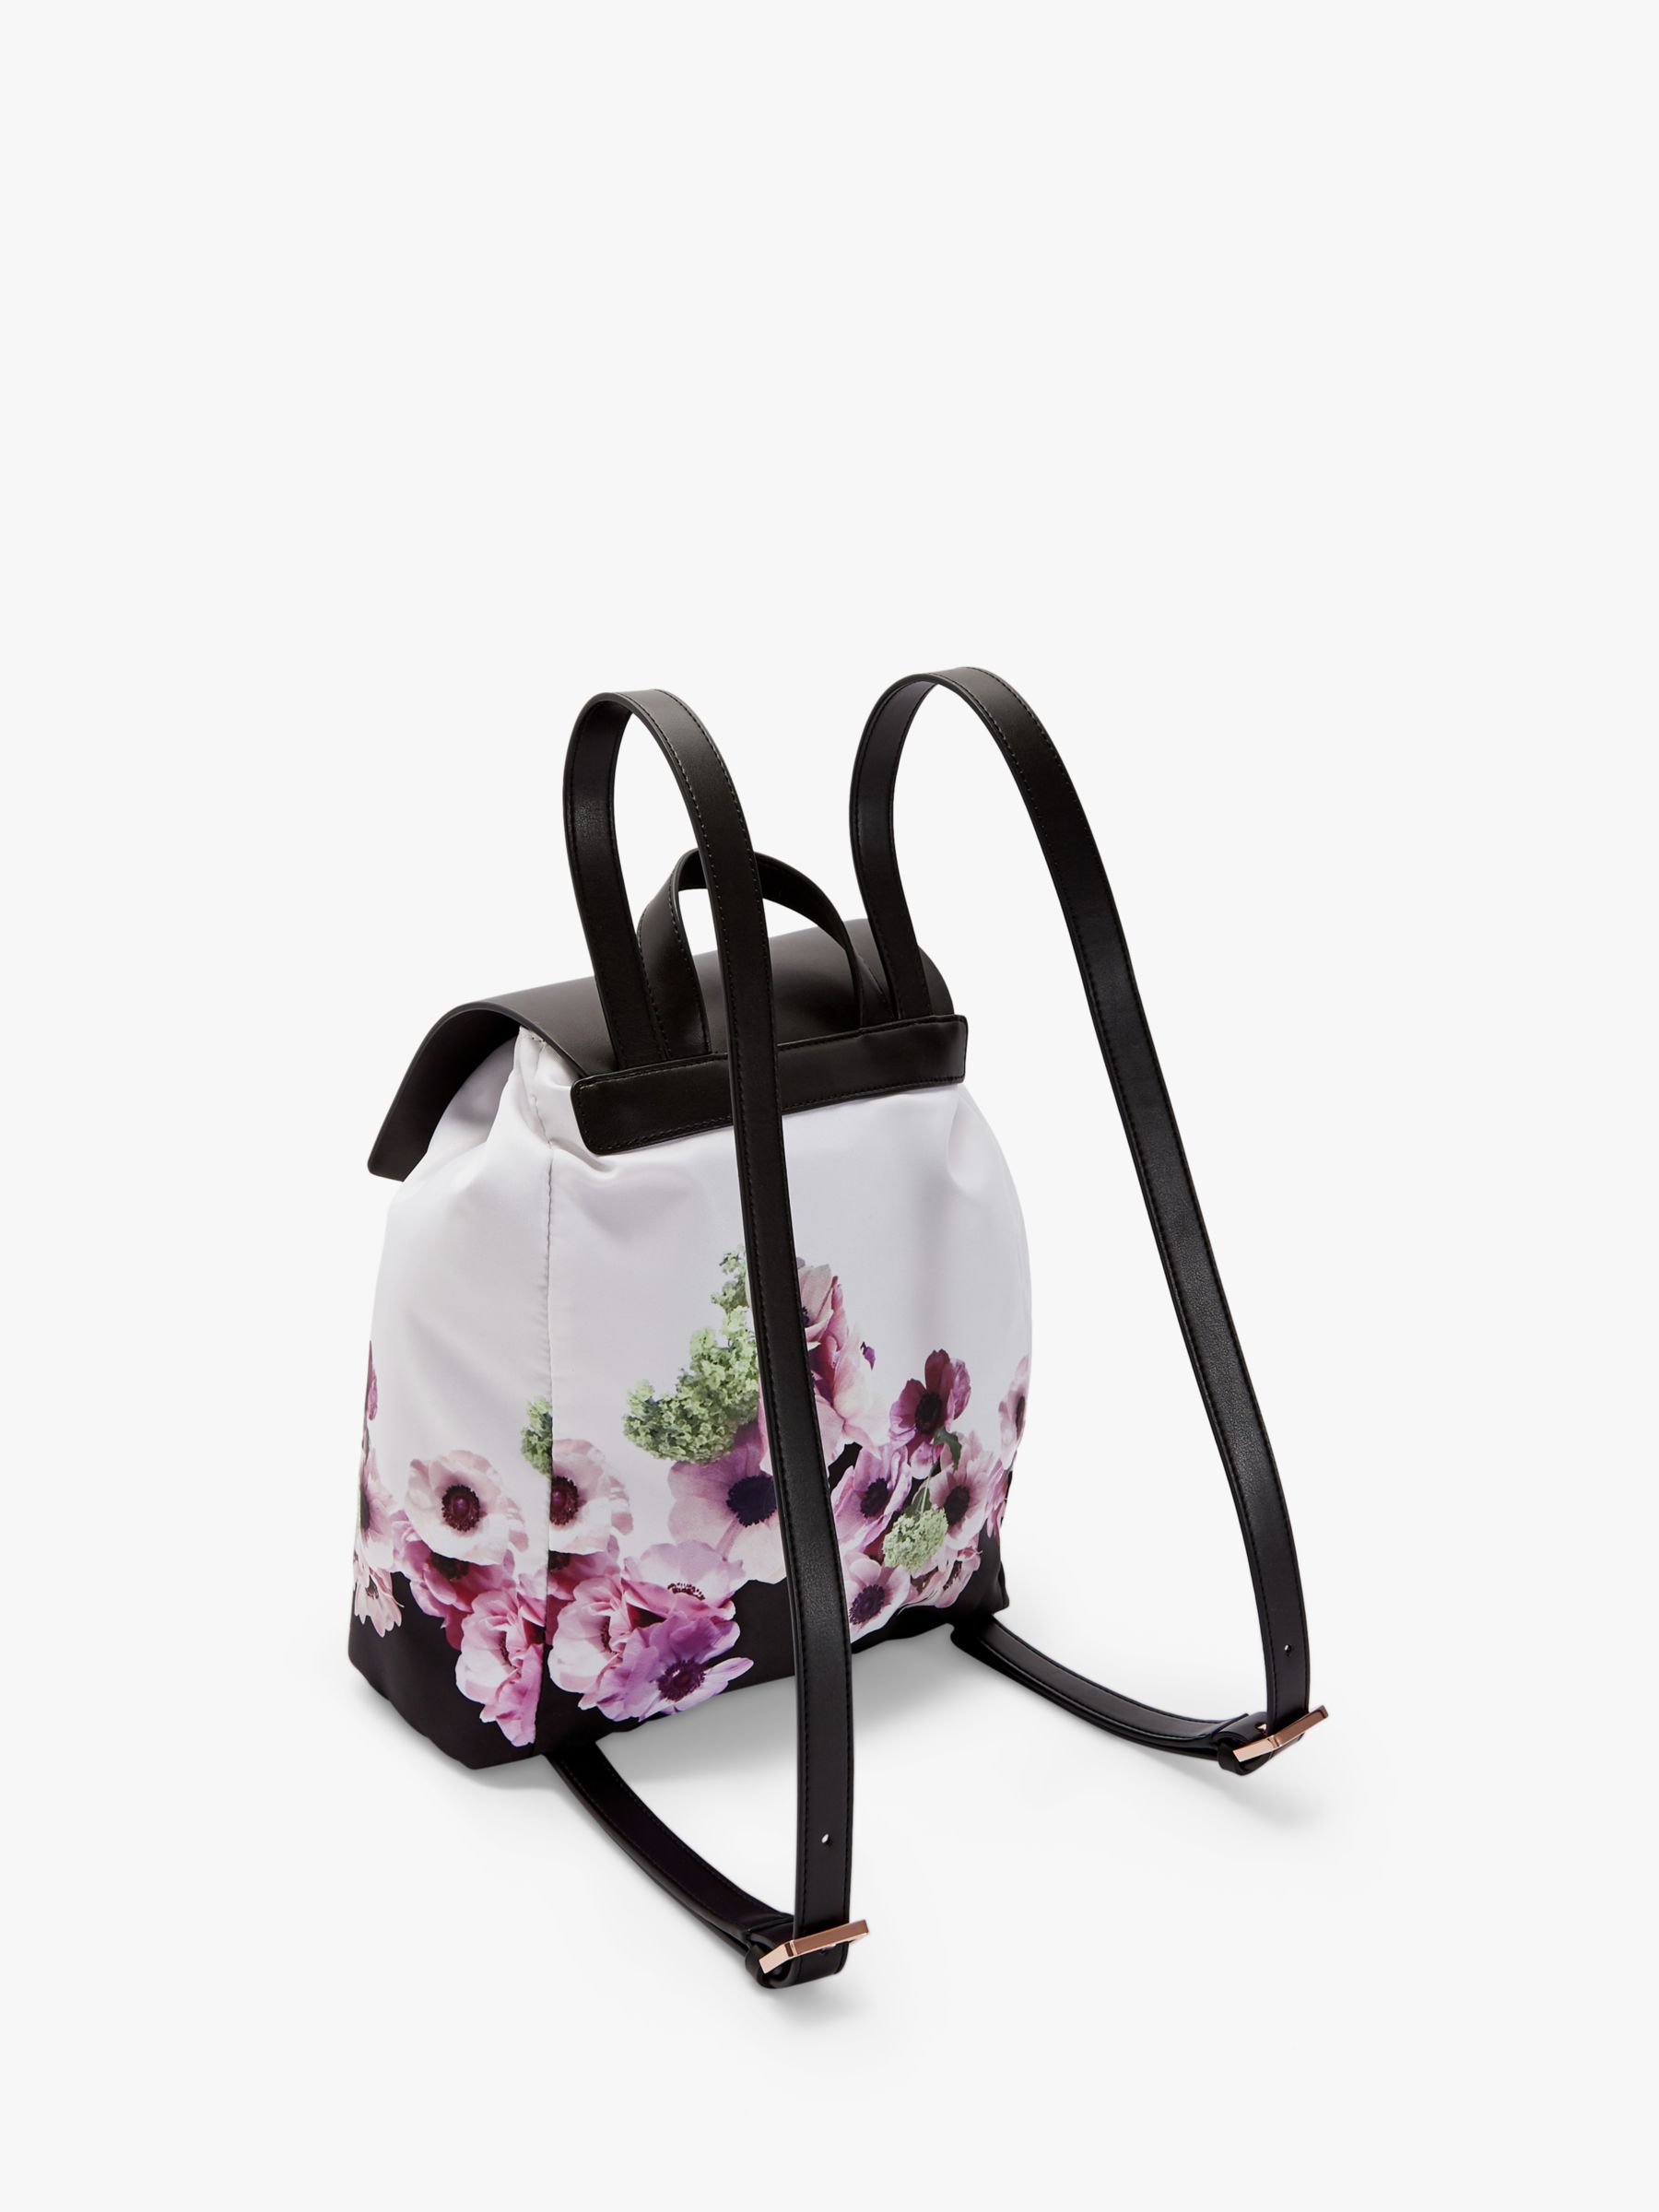 Ted Baker Ursulaa Drawstring Backpack, Black Floral